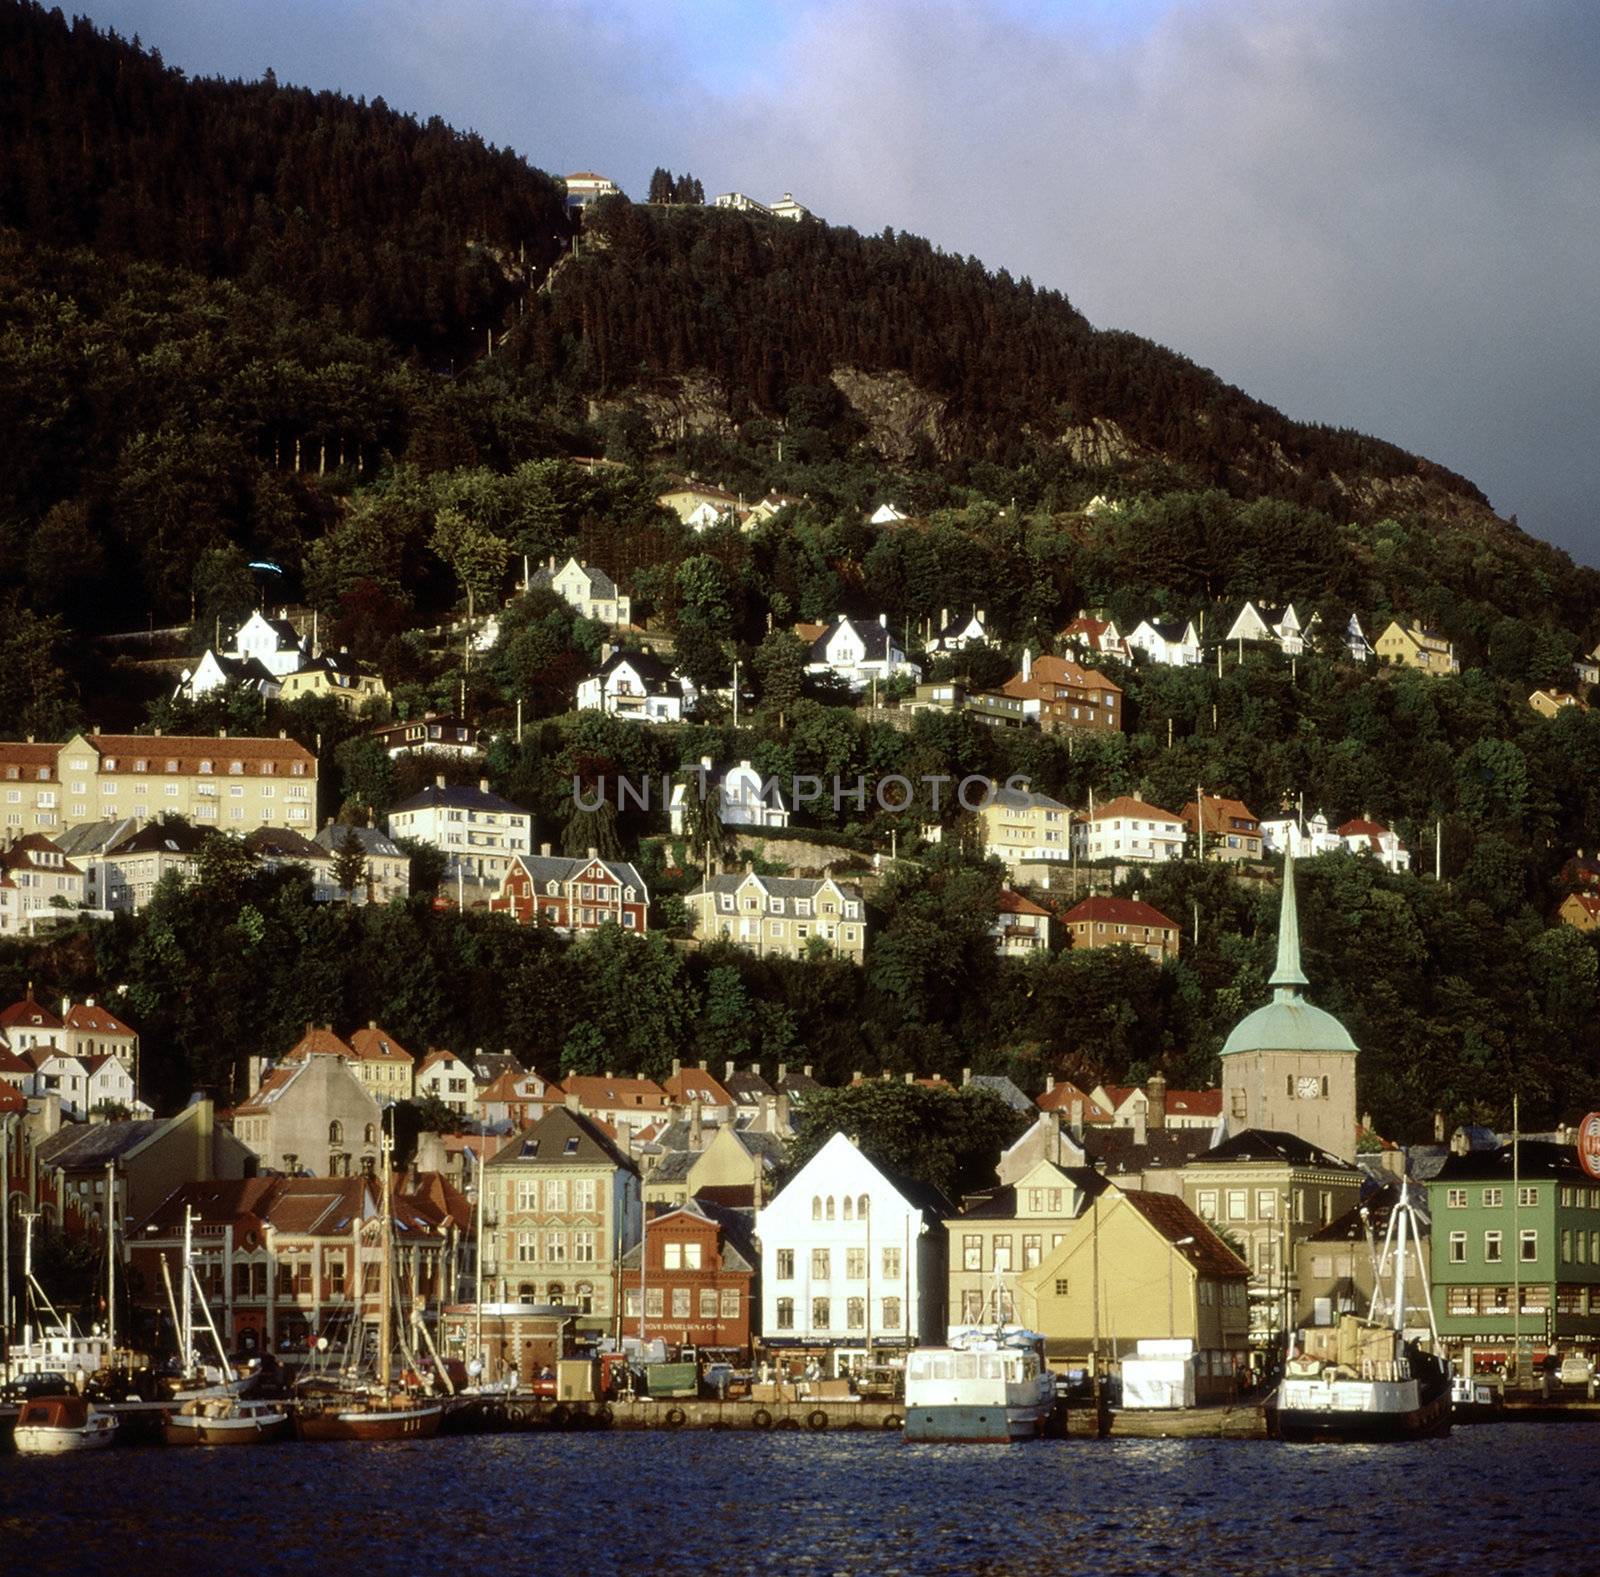 View of harbor in Bergen, Norway